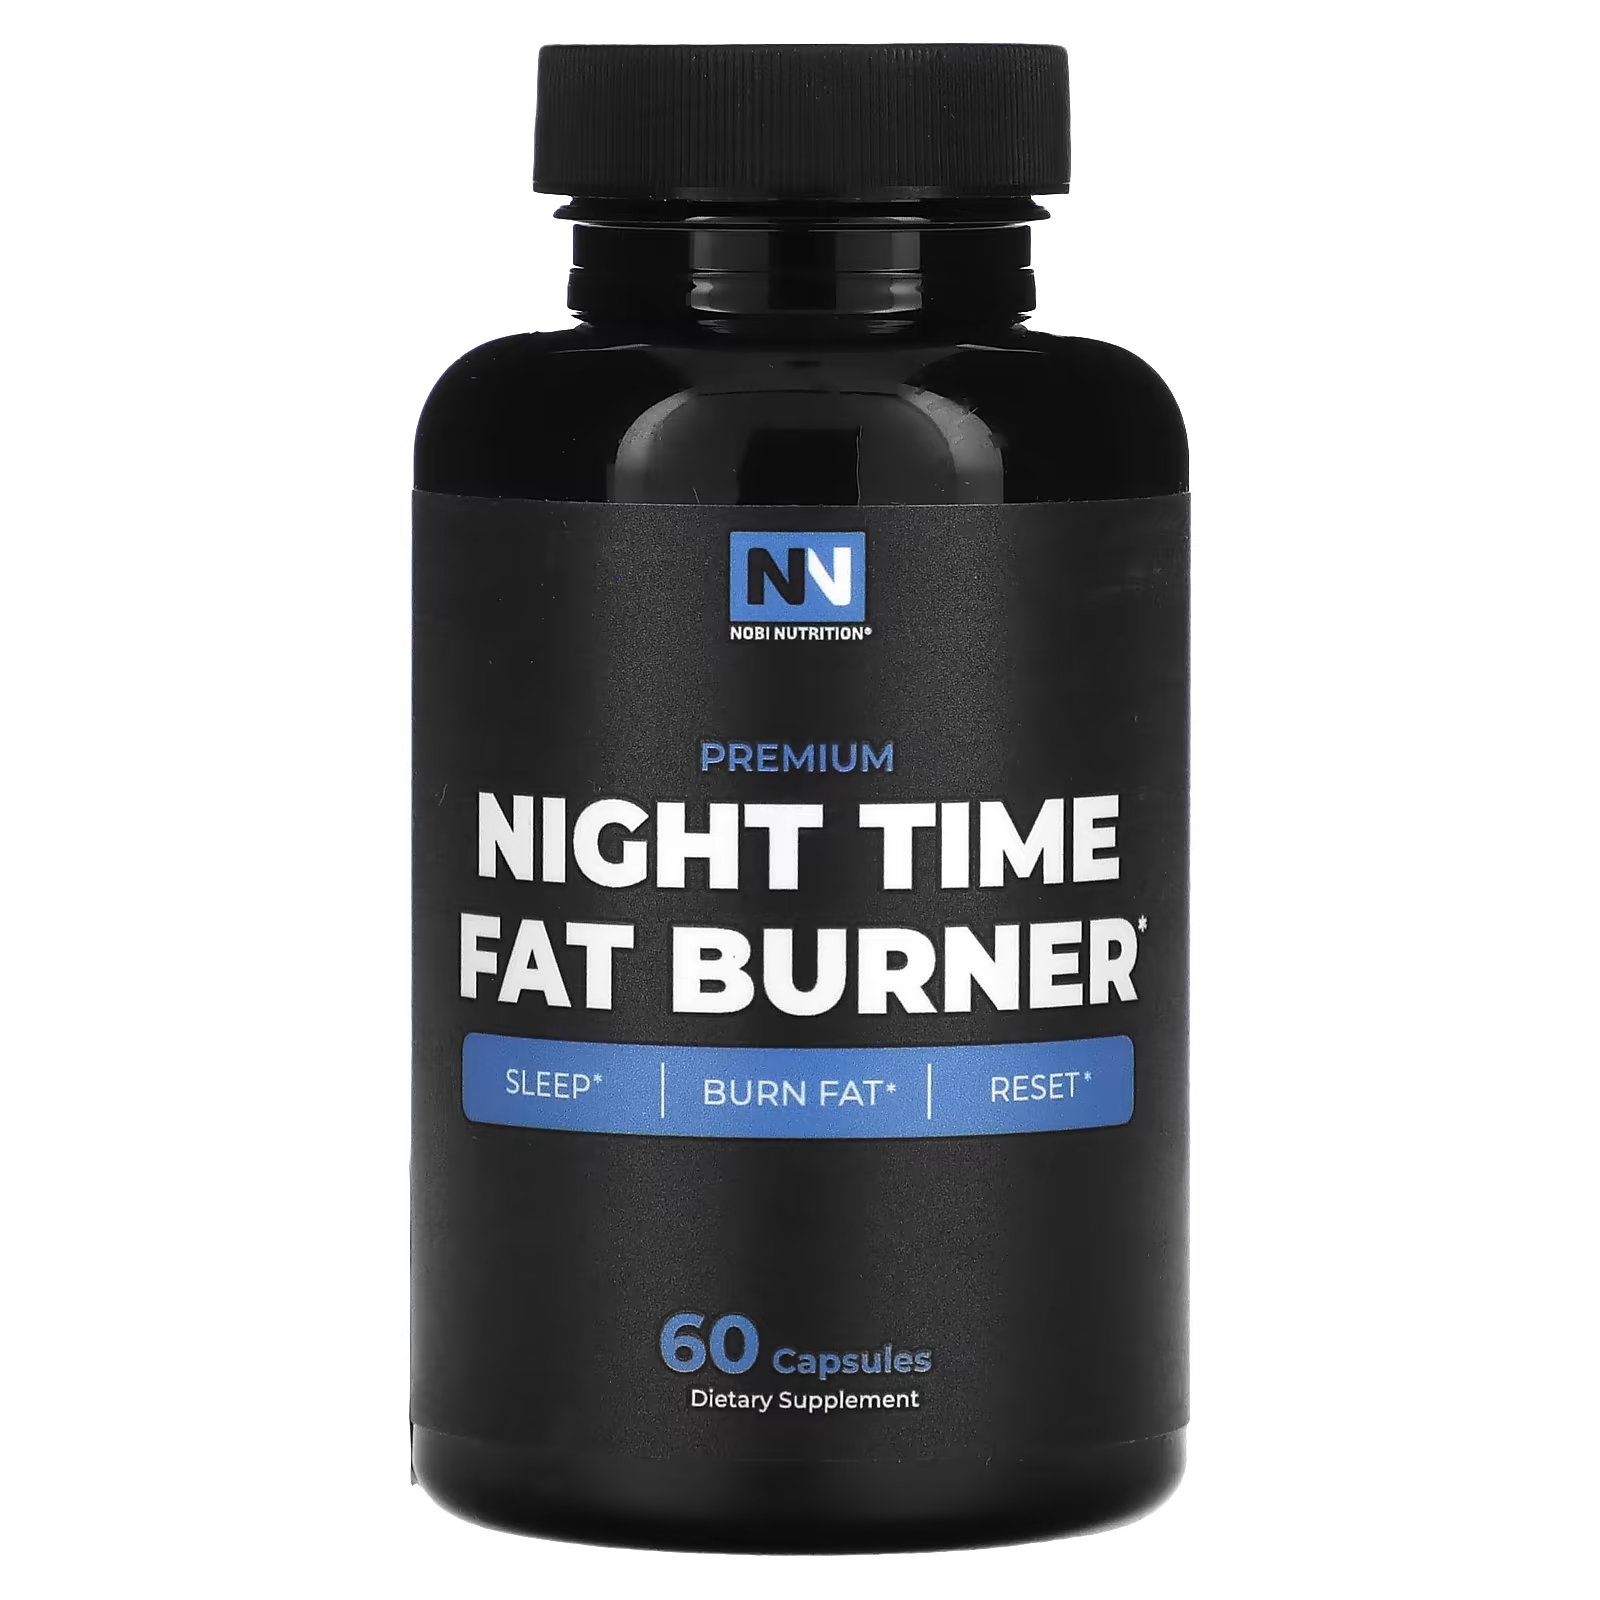 Nobi Nutrition Премиум средство для сжигания жира в ночное время, 60 капсул rsp nutrition quadralean non stim средство для сжигания жира 150 капсул